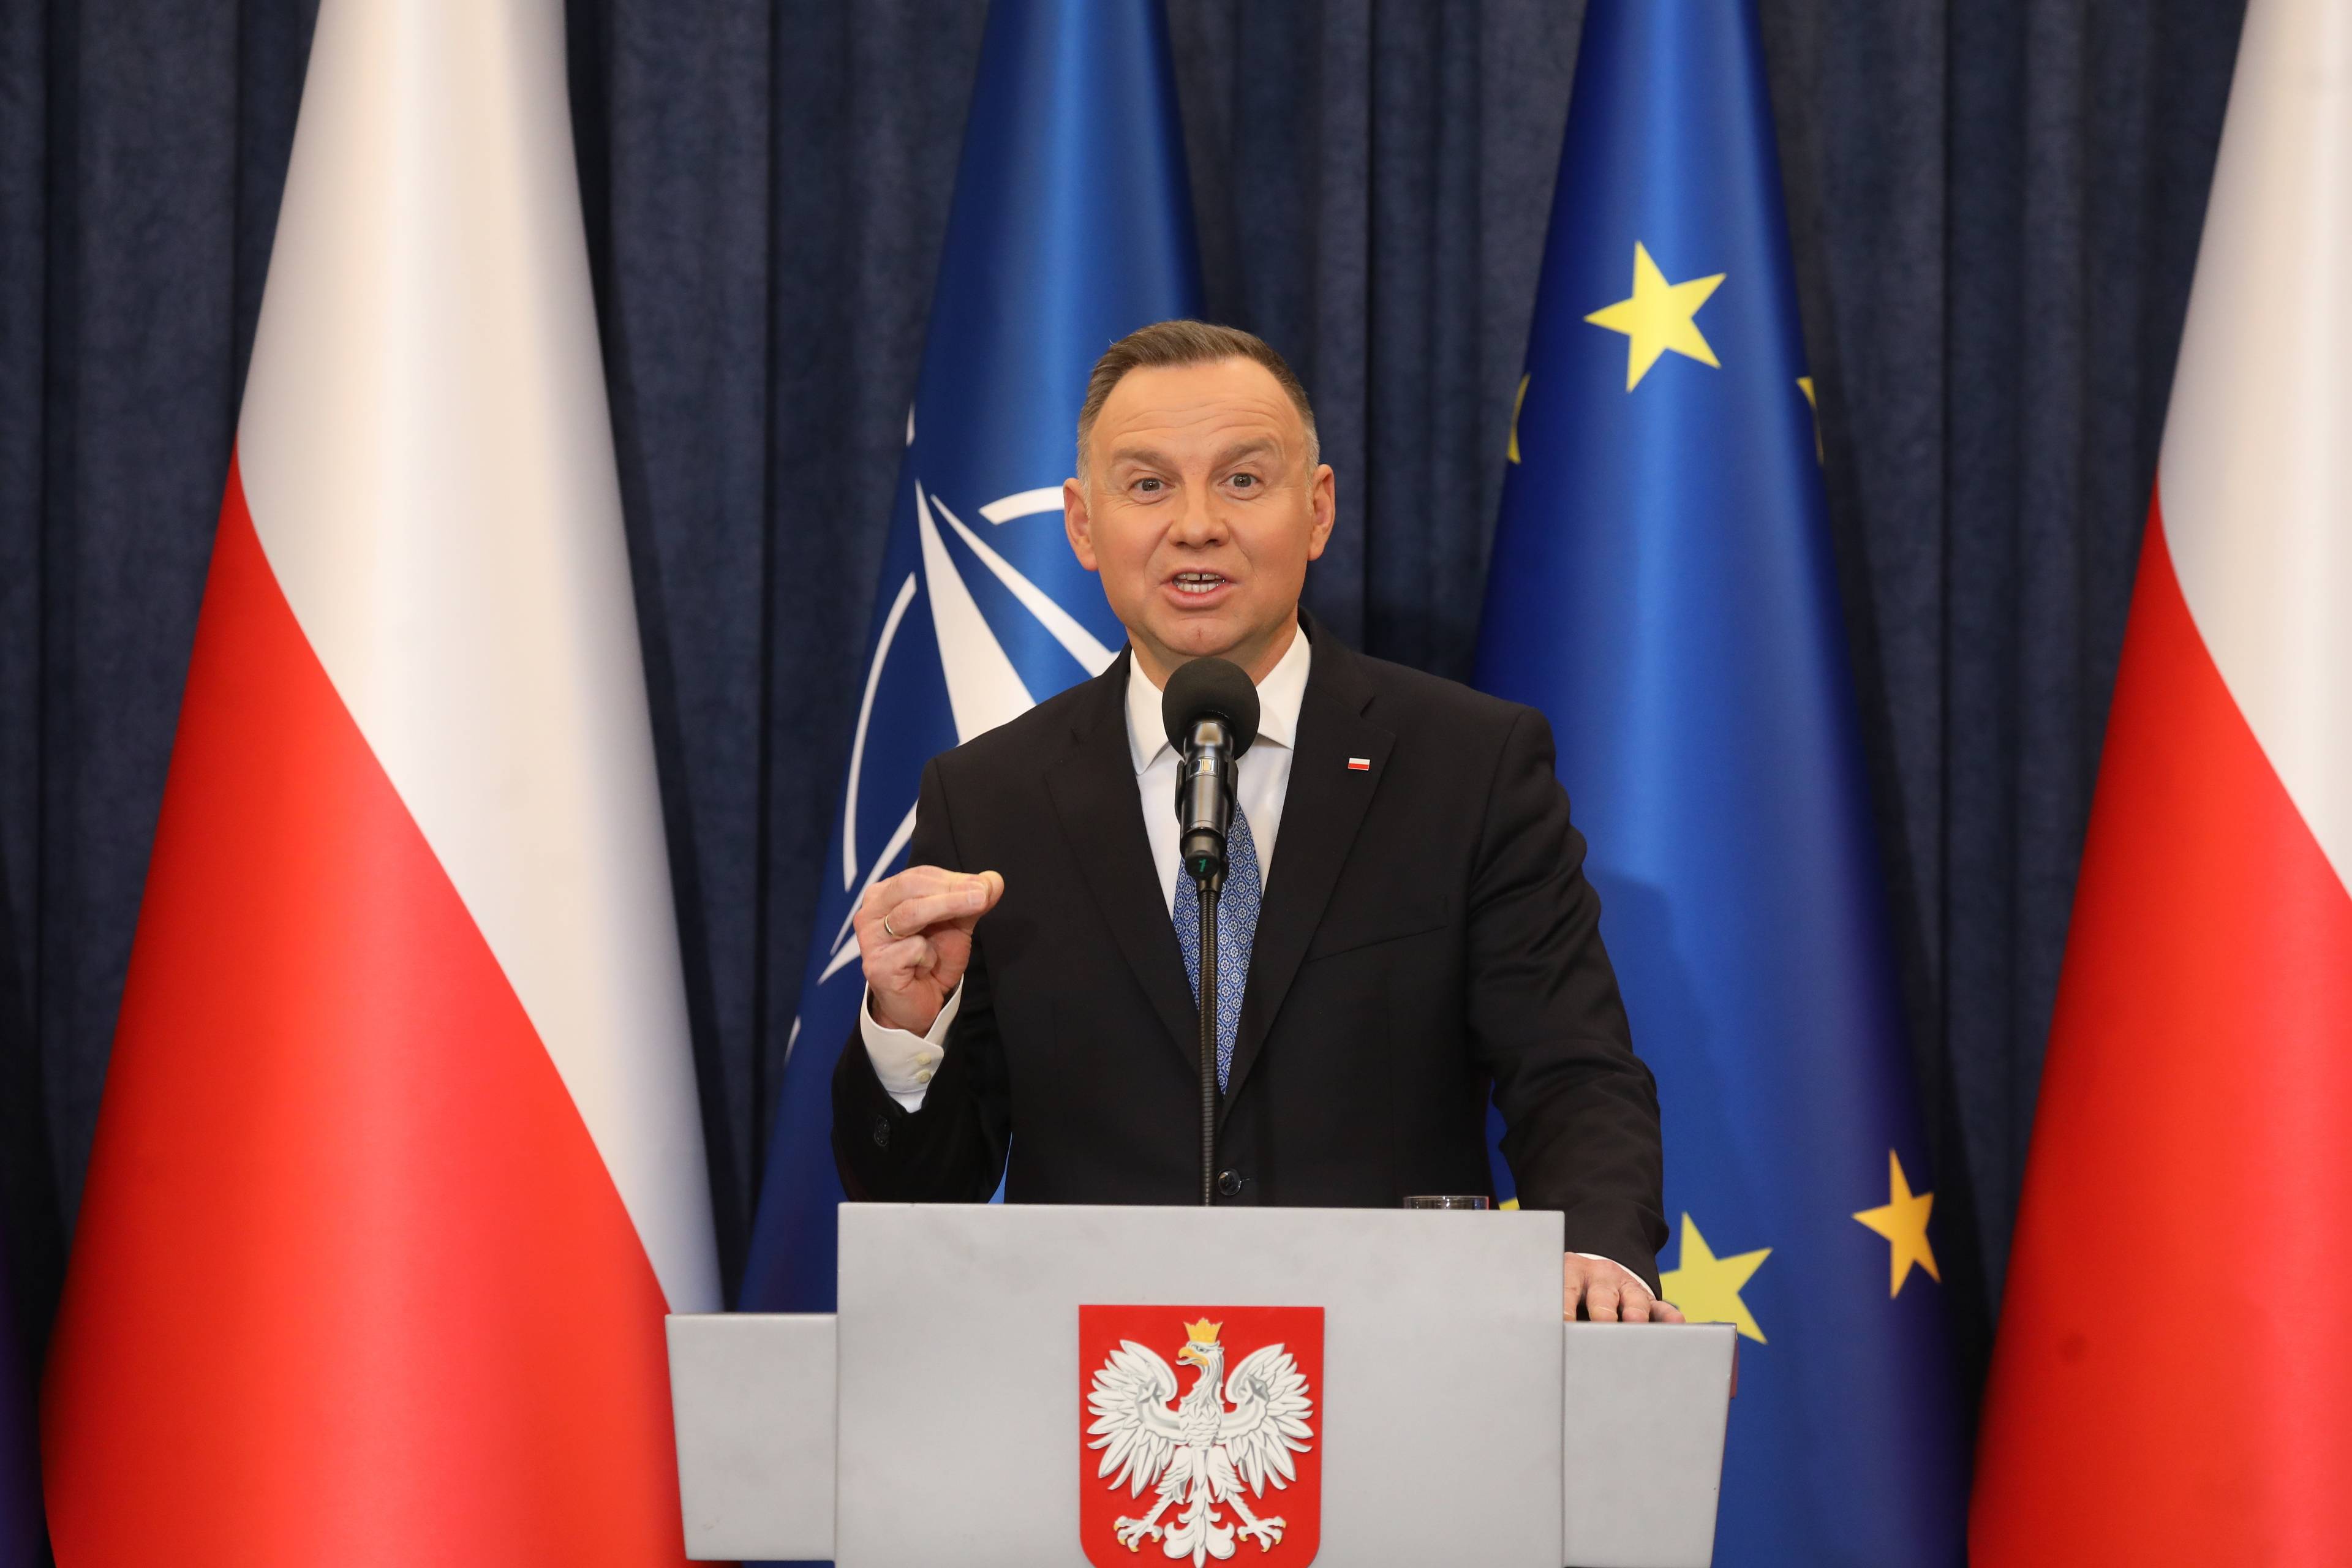 Prezydent Andrzej Duda przemawia za mównicą z godłem Polski